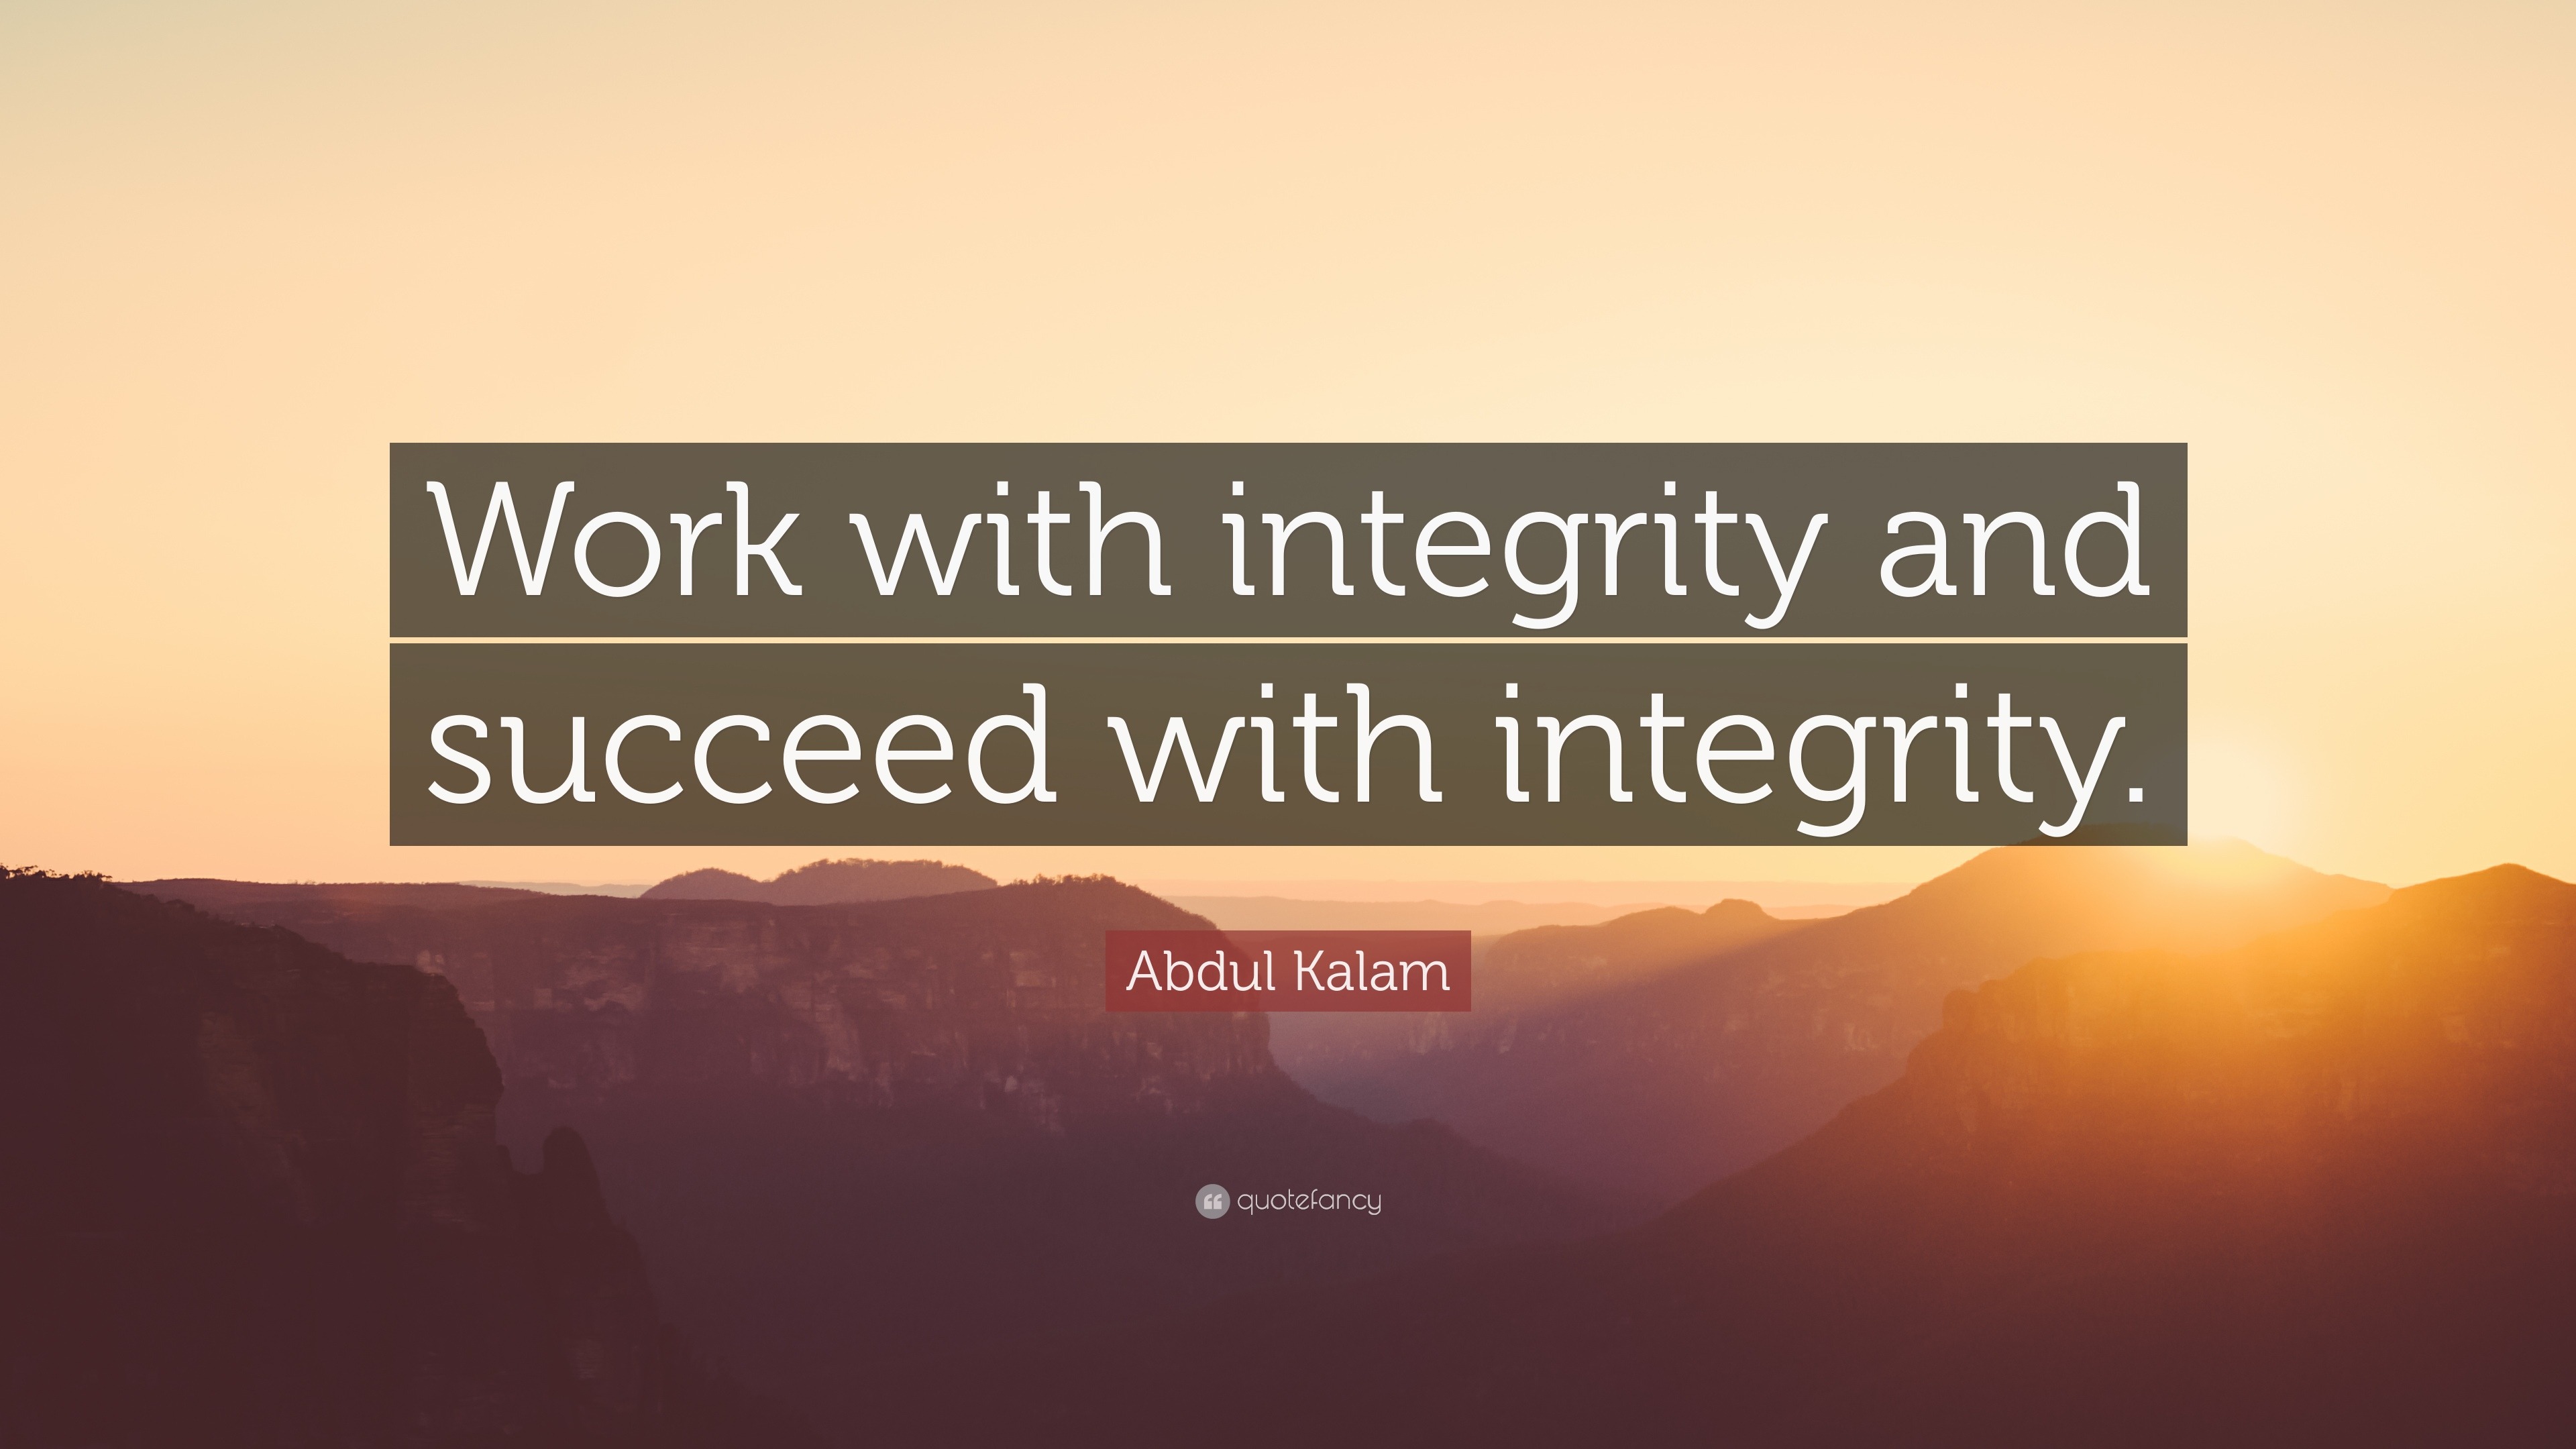 Abdul Kalam Quote: 